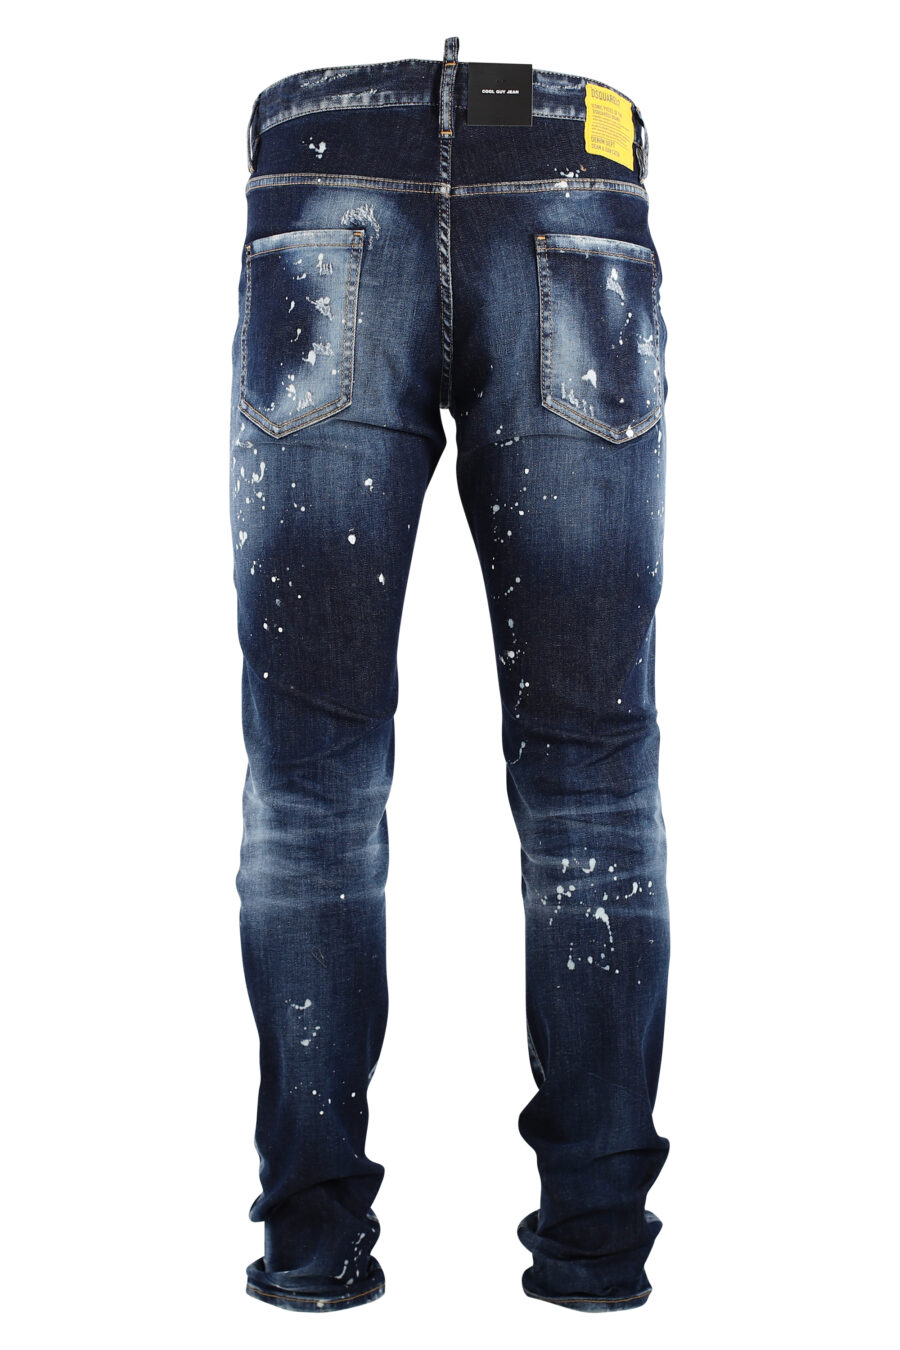 Coole Jeanshose, blau, mit weißer Farbe und Rissen - IMG 7543